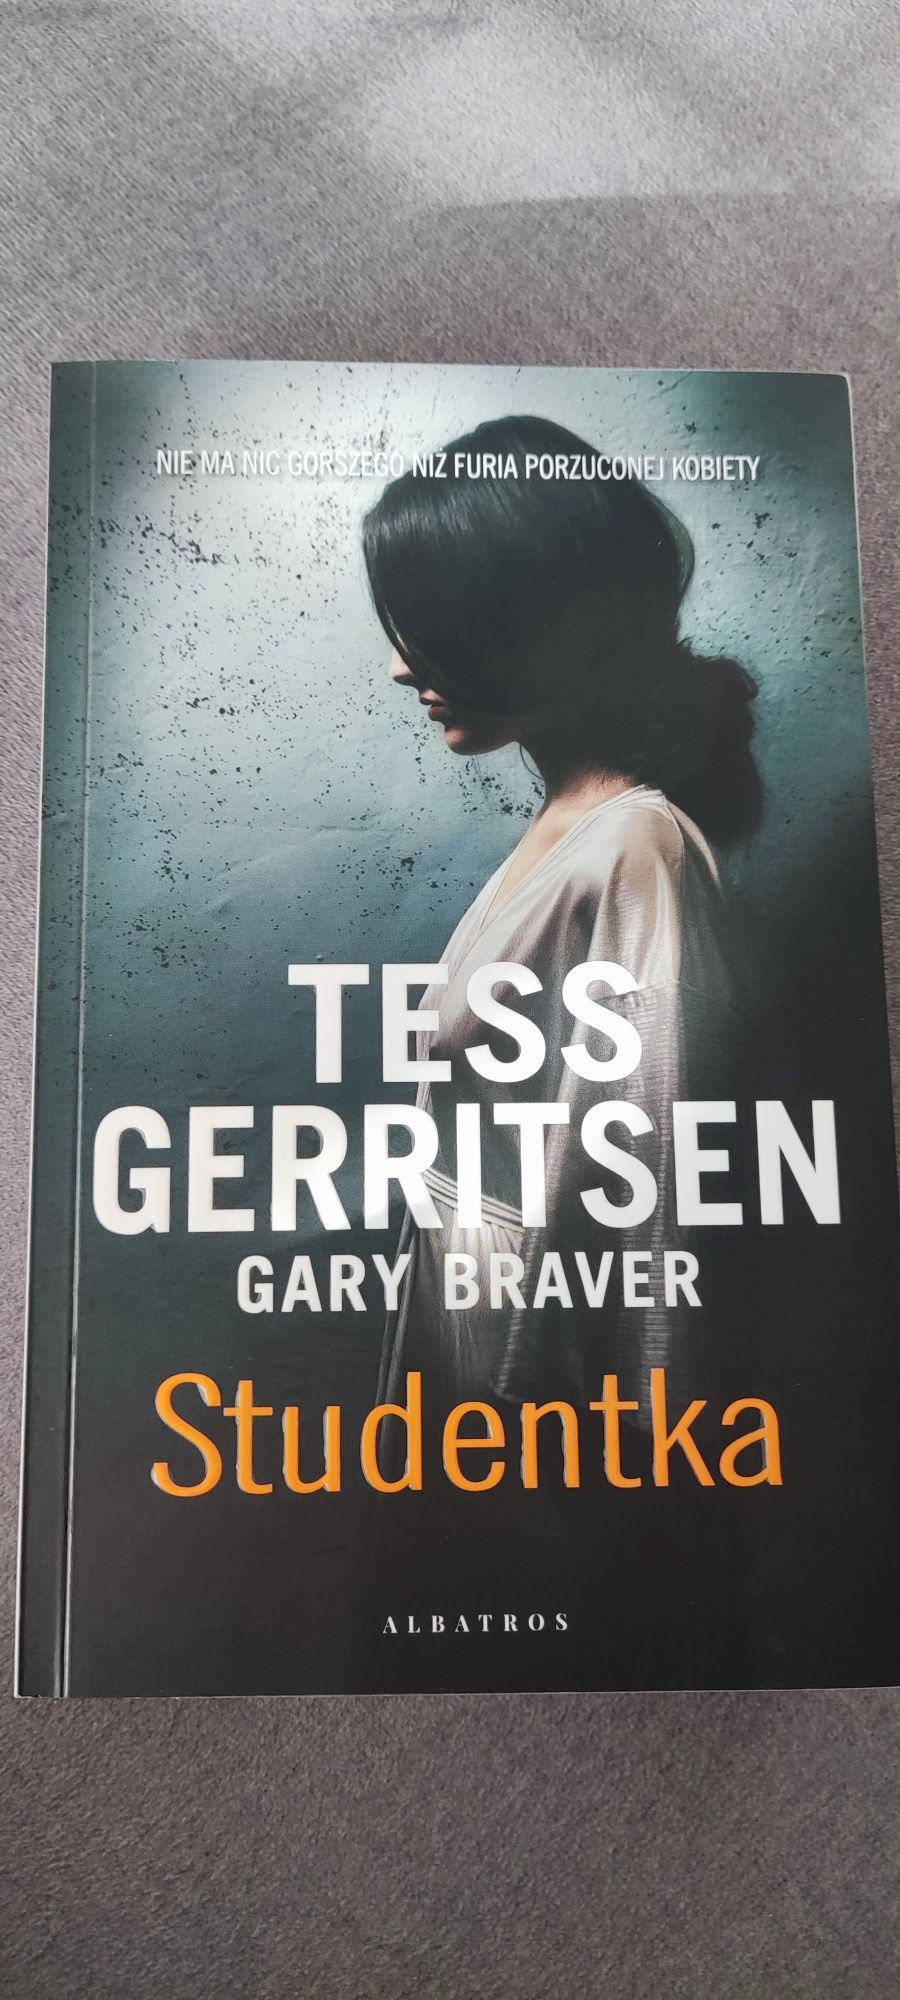 Tess Gerritsen i Gary Braver "Studentka"